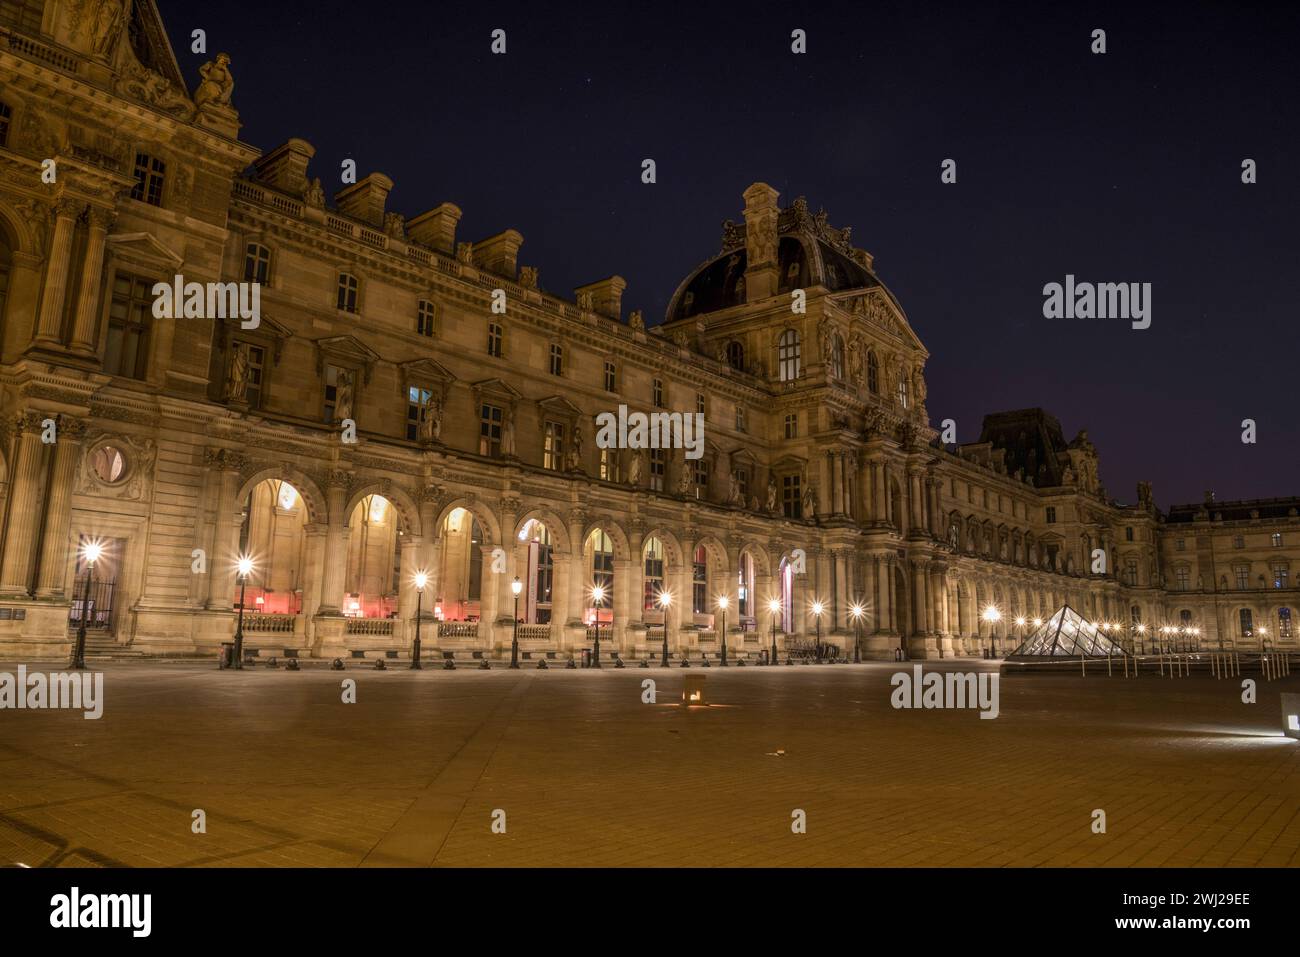 Le célèbre Palais du Louvre de Paris la nuit Banque D'Images